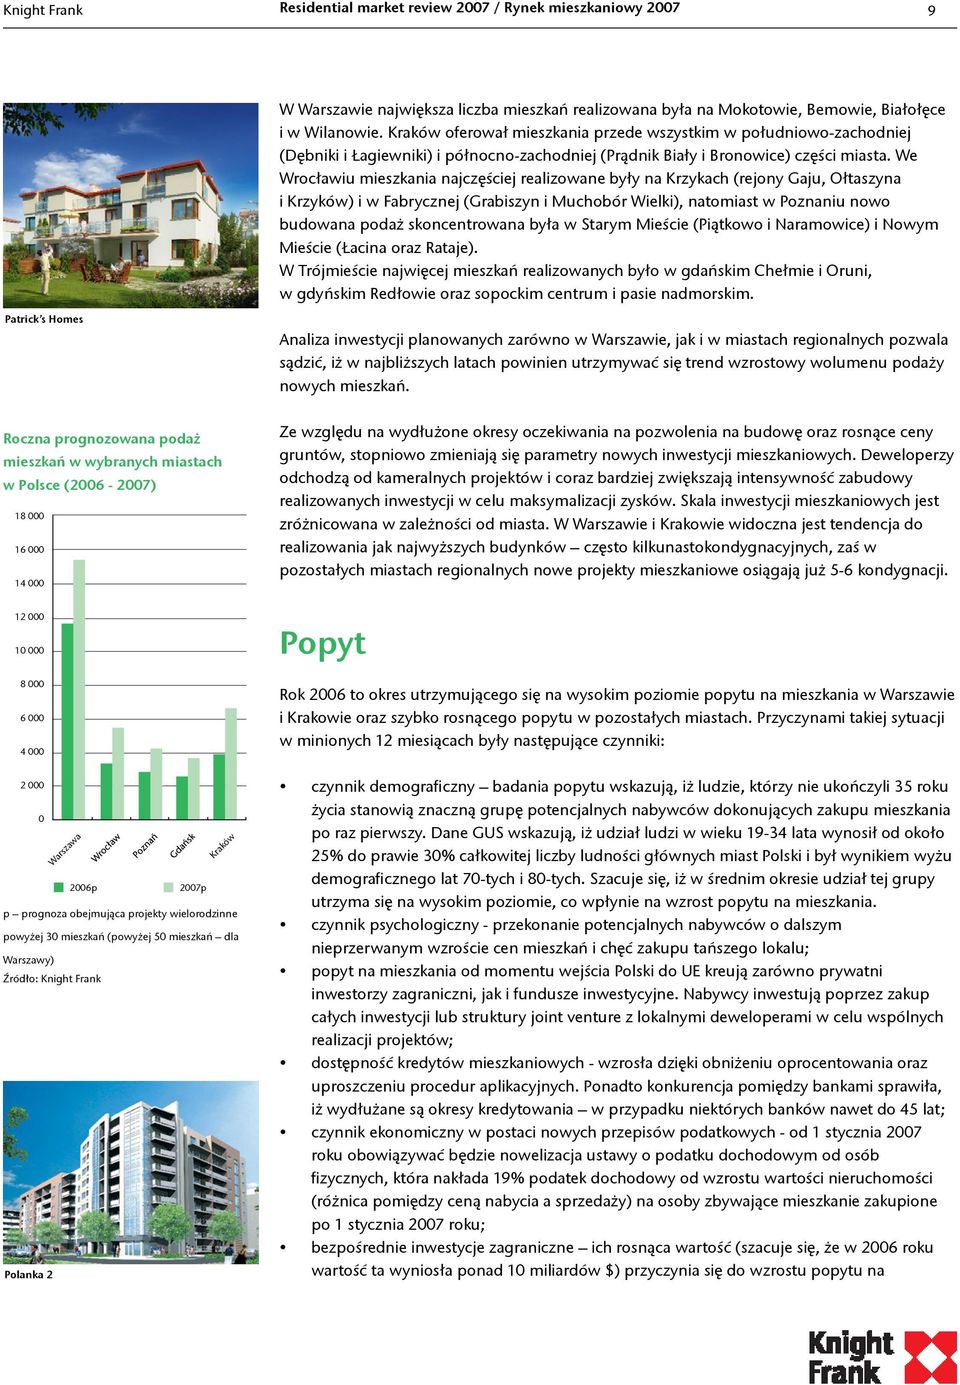 We Wrocławiu mieszkania najczęściej realizowane były na Krzykach (rejony Gaju, Ołtaszyna i Krzyków) i w Fabrycznej (Grabiszyn i Muchobór Wielki), natomiast w Poznaniu nowo budowana podaż